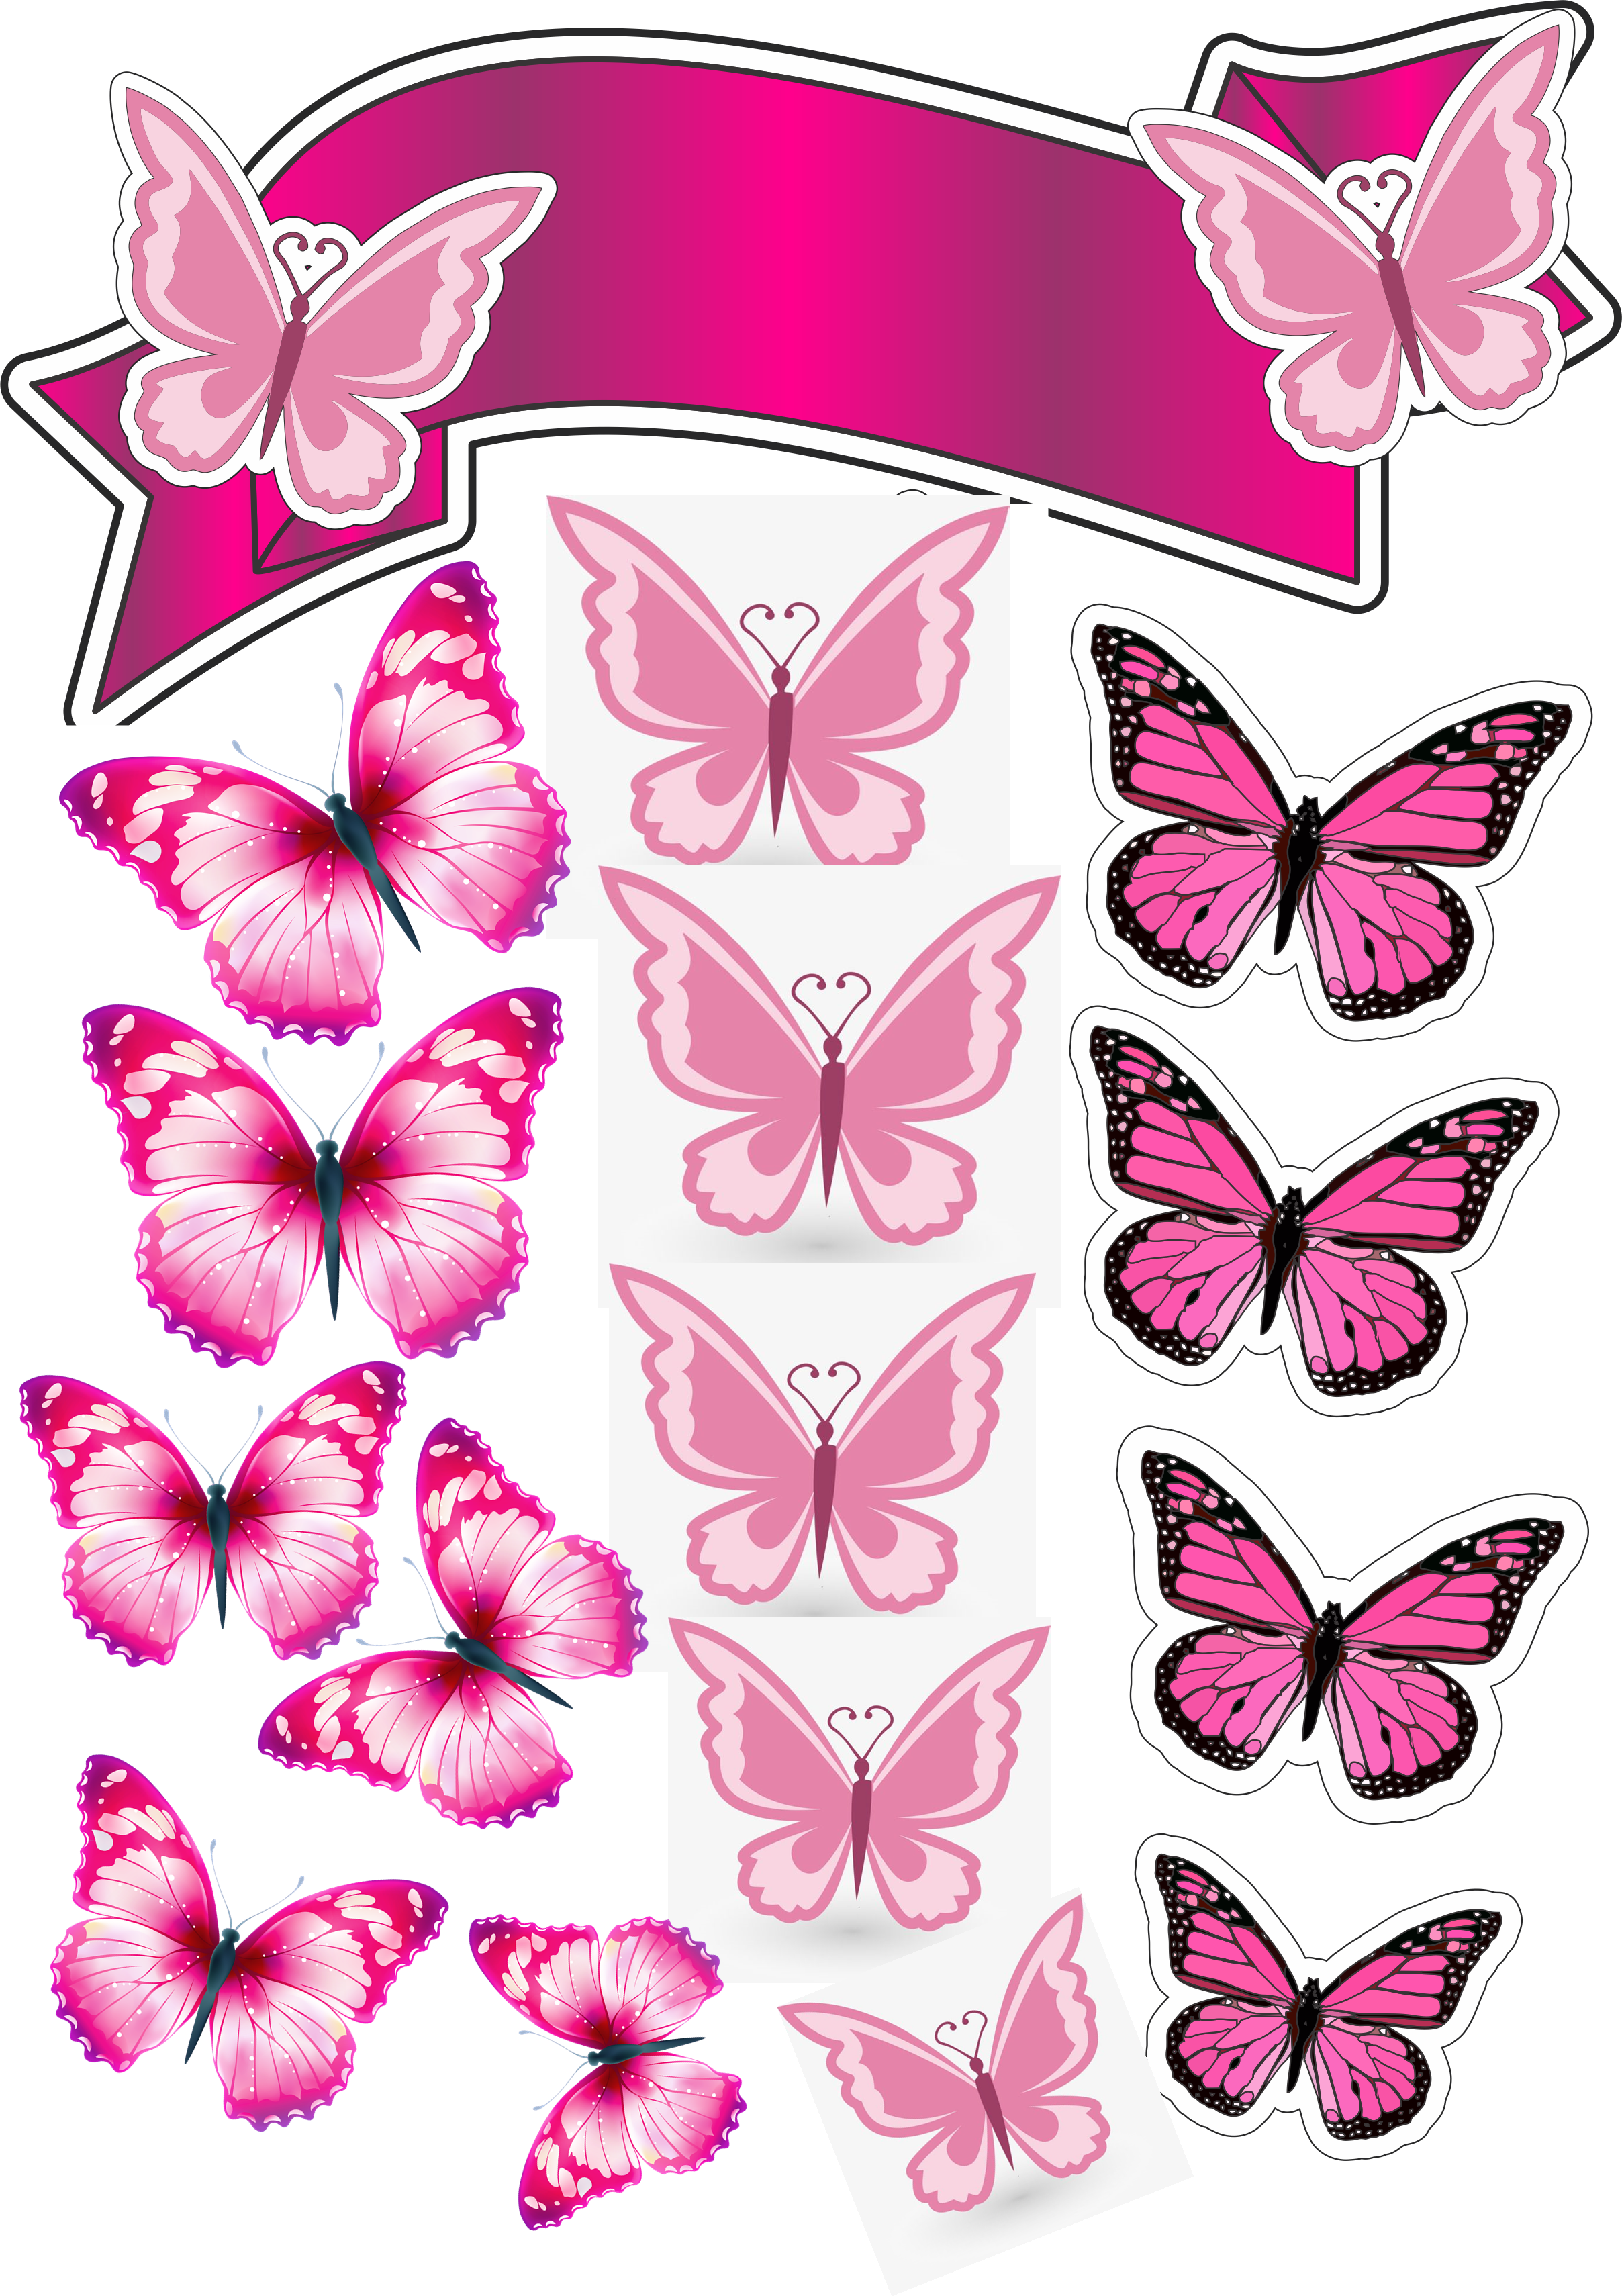 Торт «бабочки». Розовые бабочки. Бабочки шаблон для печати на торт. Бабочки для печати. Бабочки для торта картинки для печати